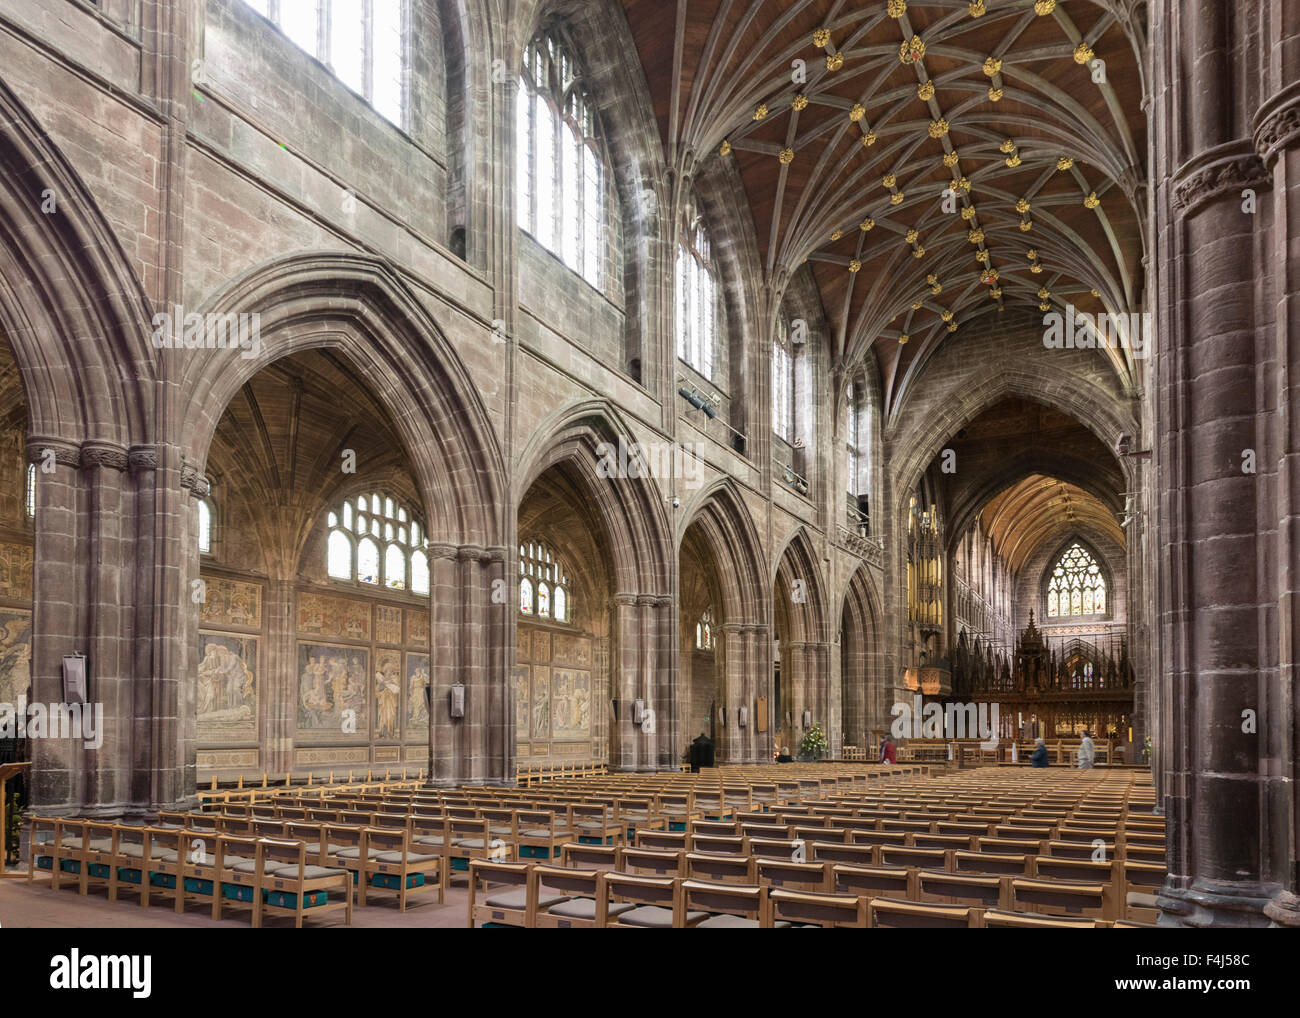 La cathédrale de Chester, à au nord-est de l'intérieur, Cheshire, Angleterre, Royaume-Uni, Europe Banque D'Images